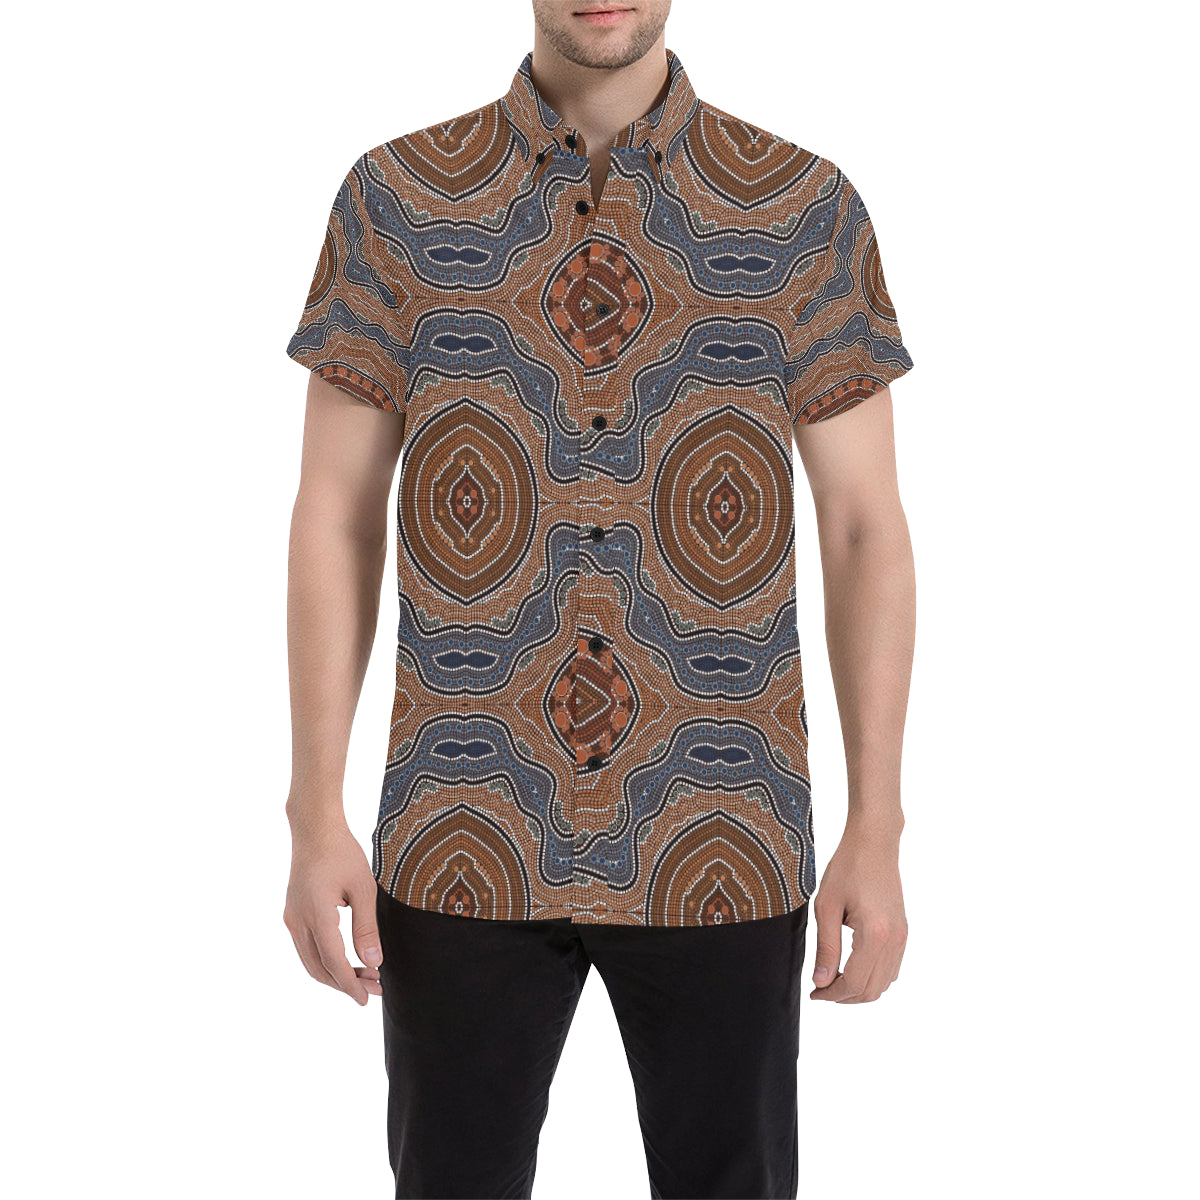 Aboriginal Pattern Print Design 01 Men's Short Sleeve Button Up Shirt